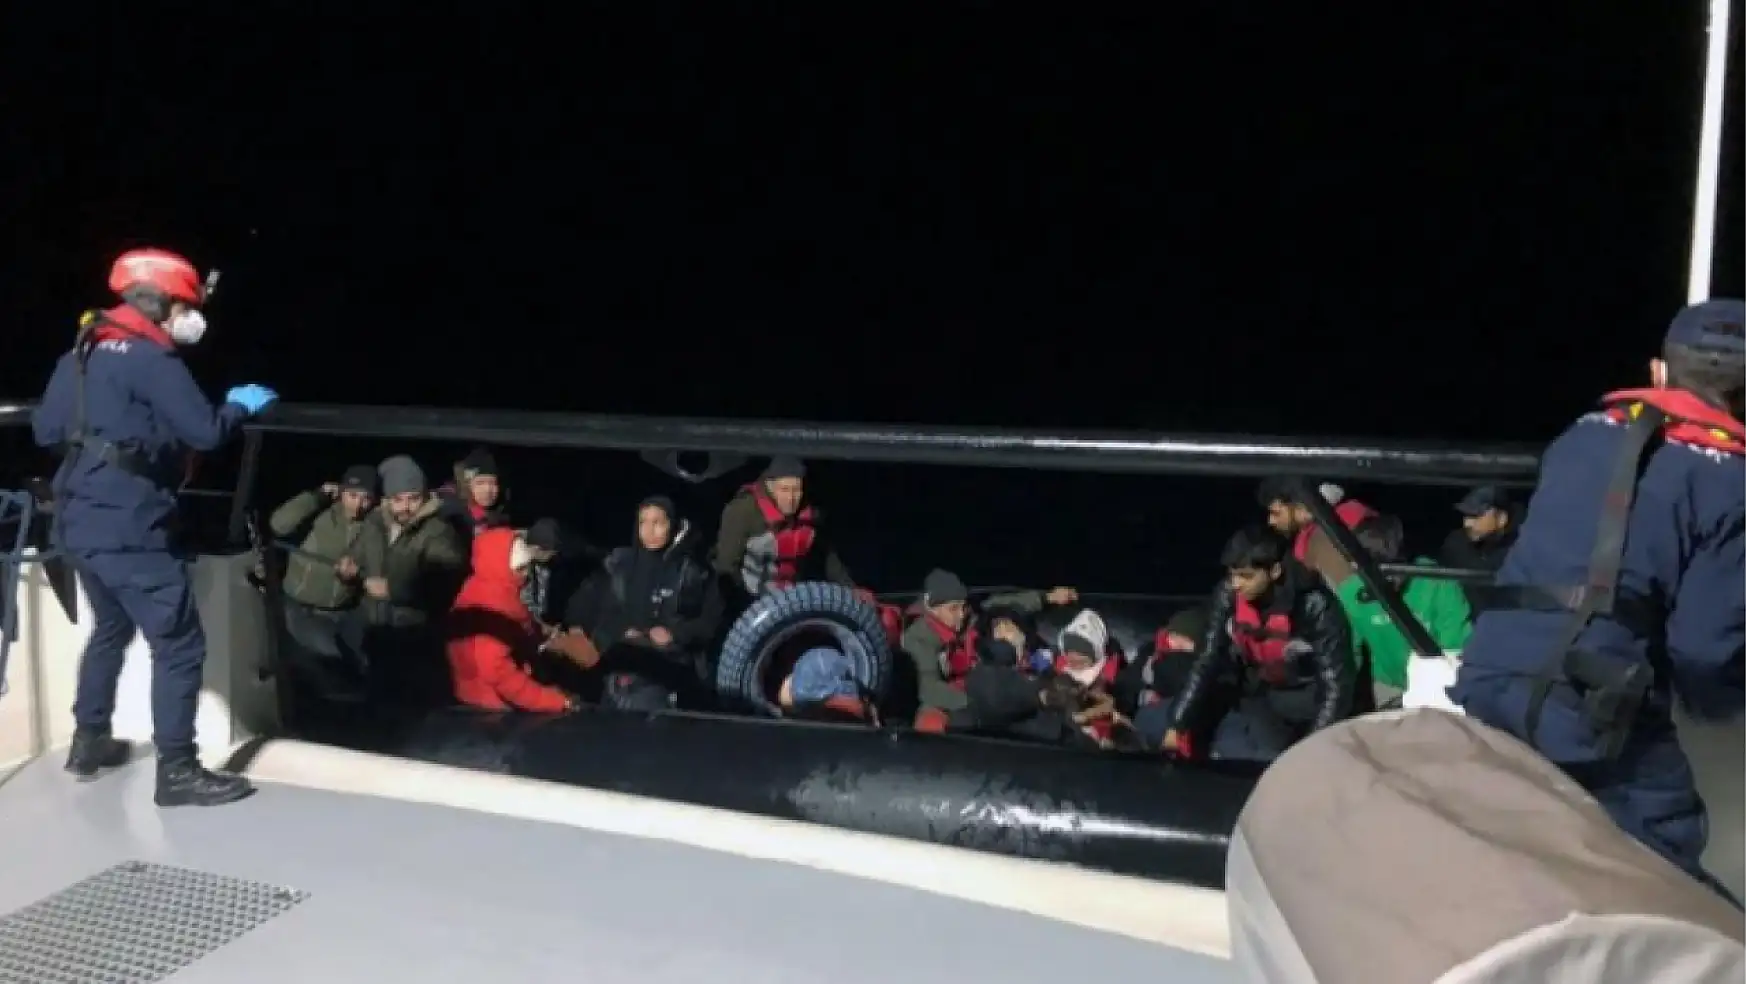 Yunan adalarına geçmeye çalışan göçmenler yakalandı